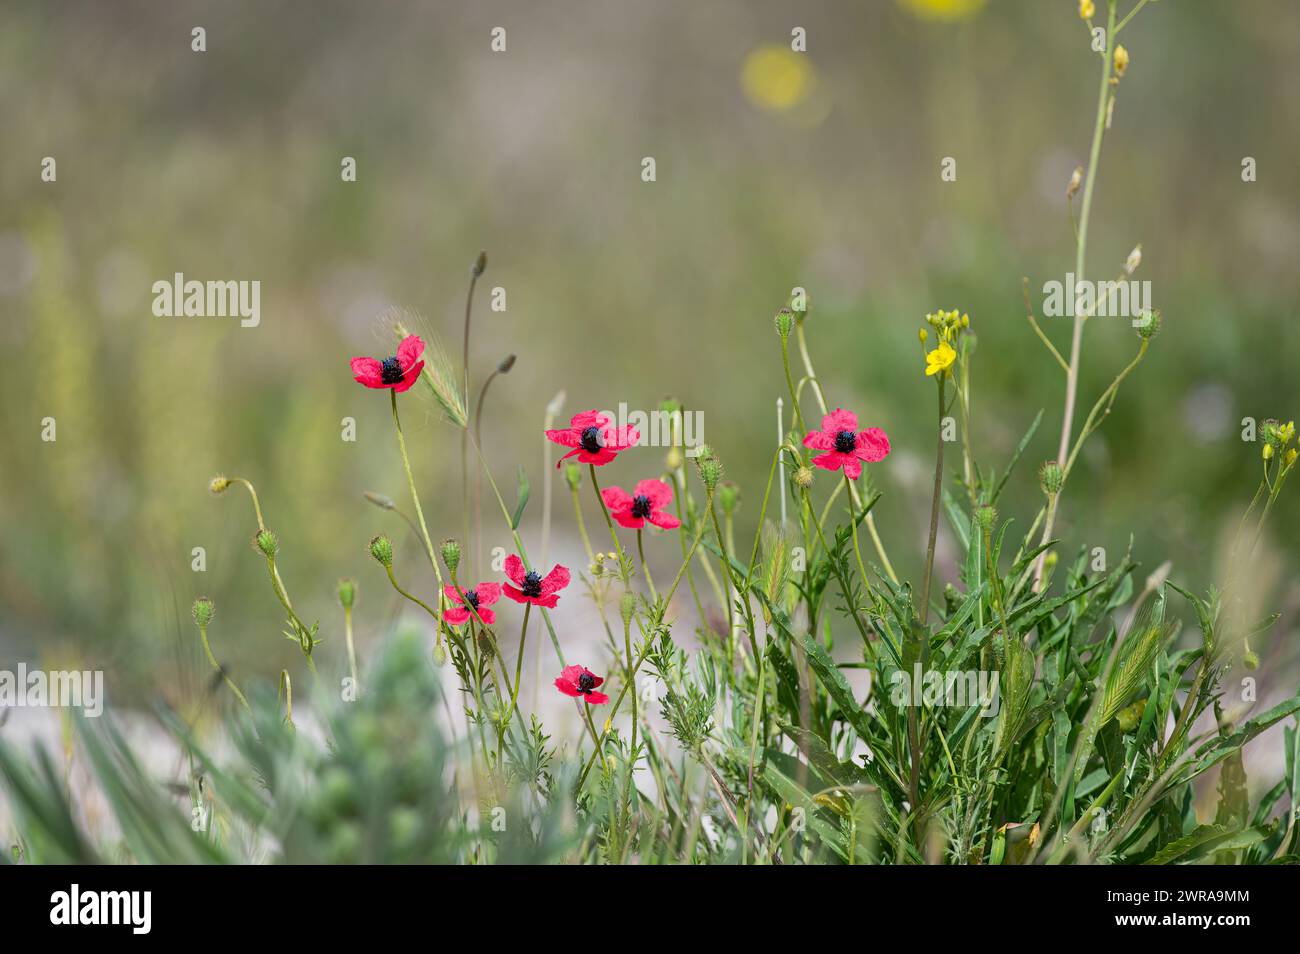 Fleur de pavot rose, Papaver dubium, fond d'herbe verte, nature en plein air, prairie avec des fleurs sauvages en gros plan Banque D'Images